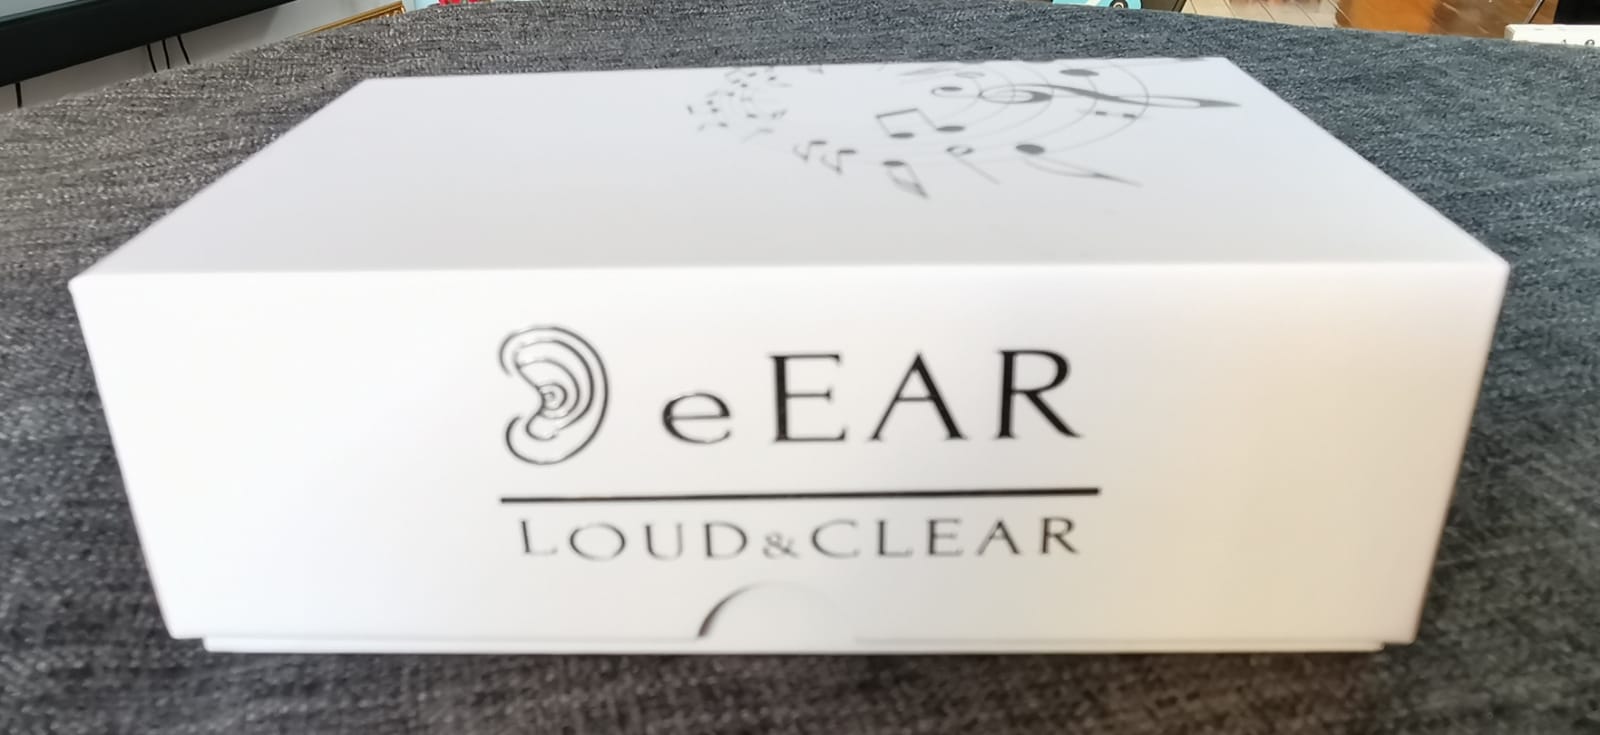 eEAR Digital Hearing Aid, CIC (Complete in Canal), eEar CIC-T25 Entworfen und konstruiert in den USA Für das rechte Ohr 79,88 $, für das linke Ohr 79,88 $ für ein Paar (rechts + links) = 149,88 $